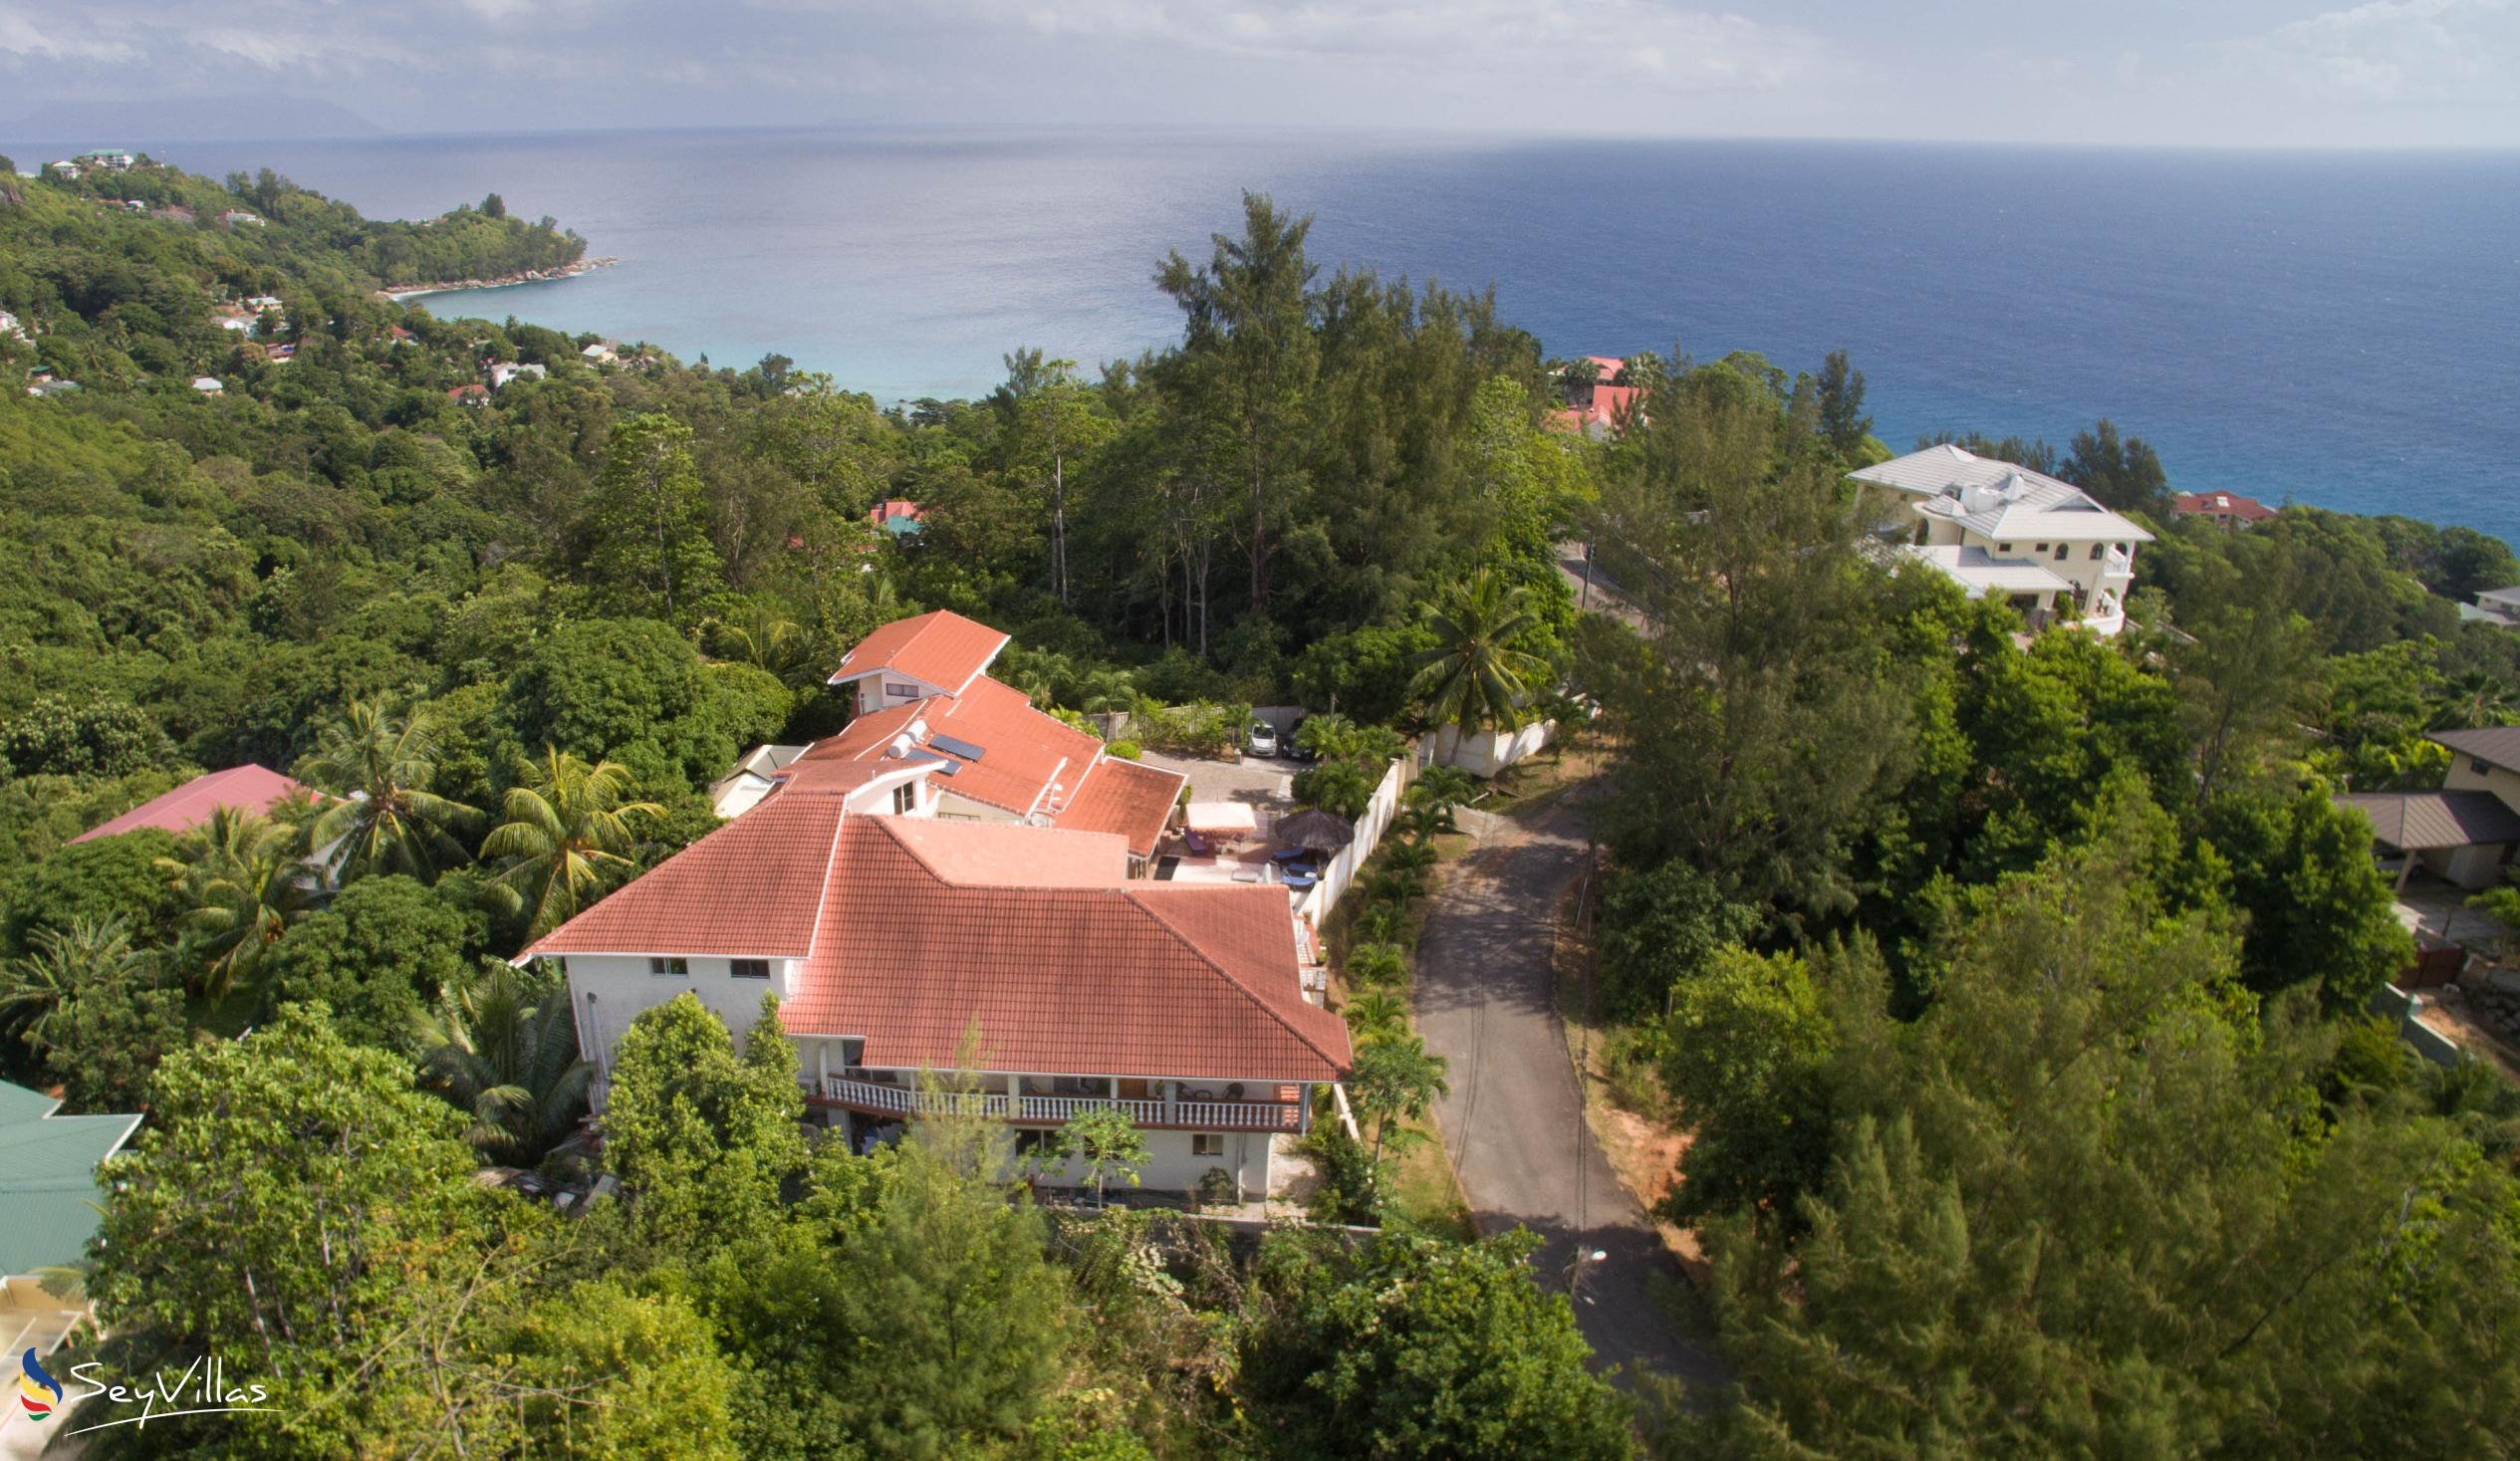 Foto 3: Carana Hilltop Villa - Aussenbereich - Mahé (Seychellen)